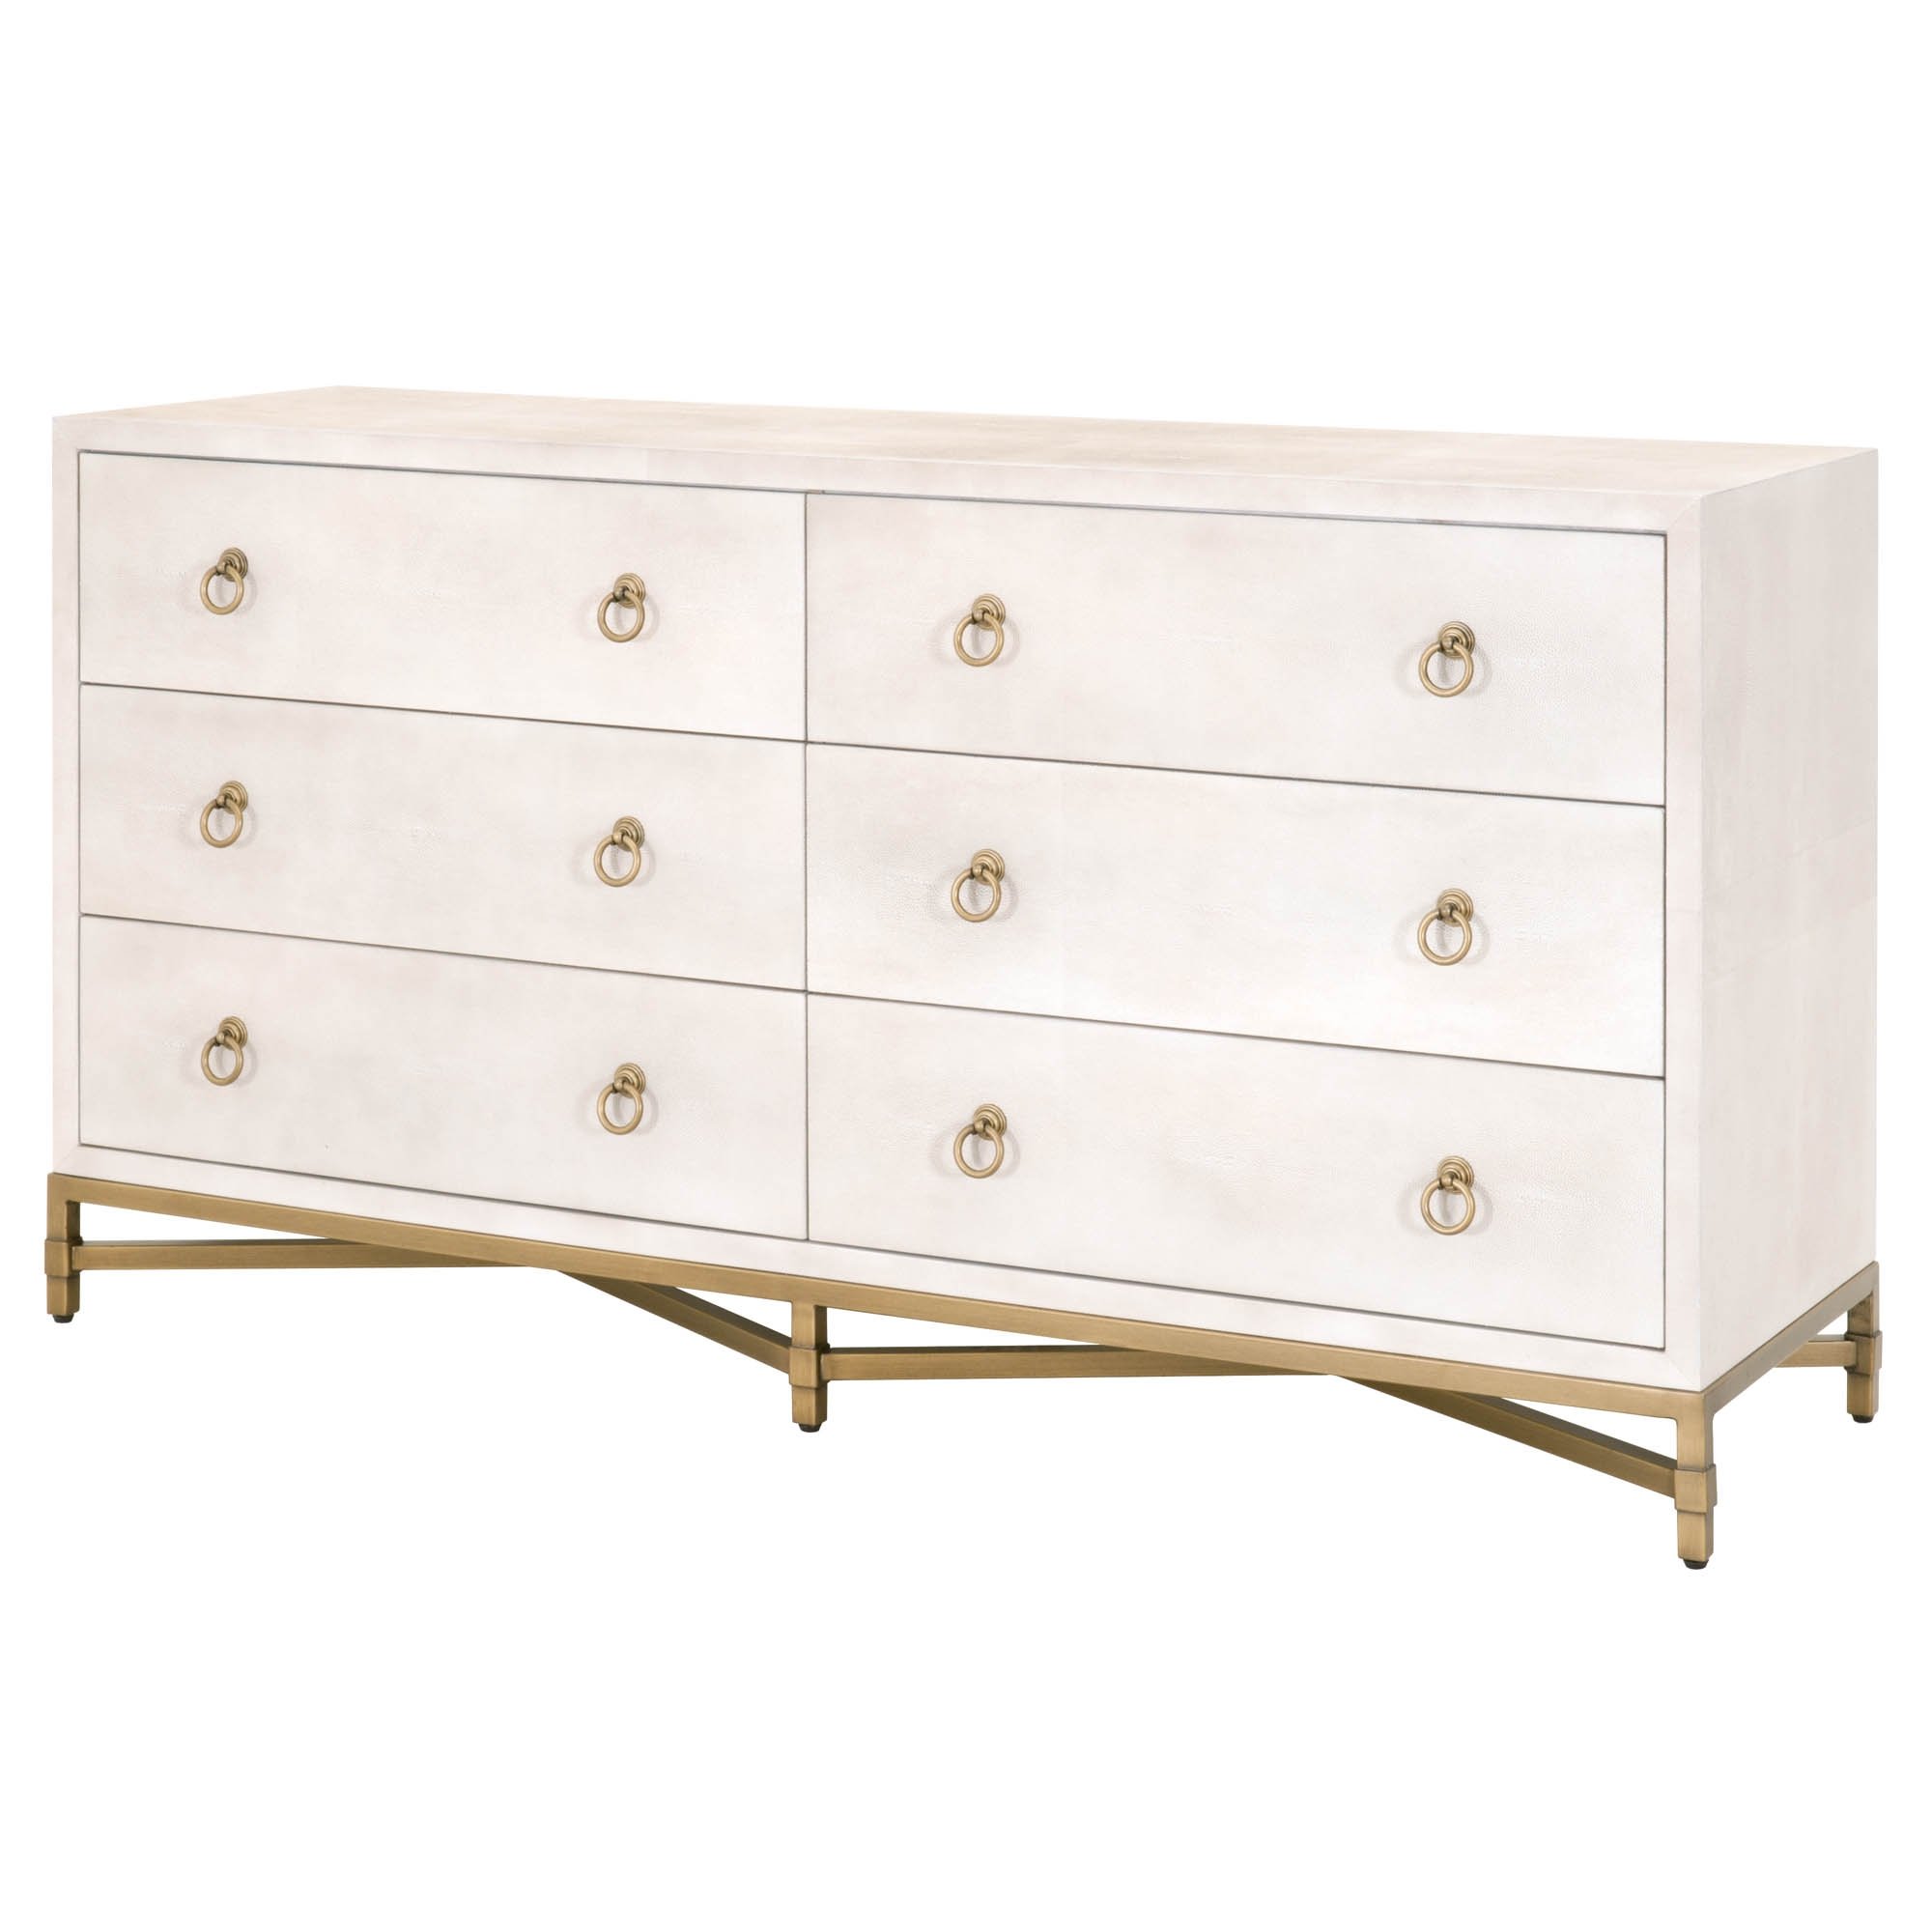 Strand Shagreen 6-Drawer Double Dresser, White & Gold - Image 2